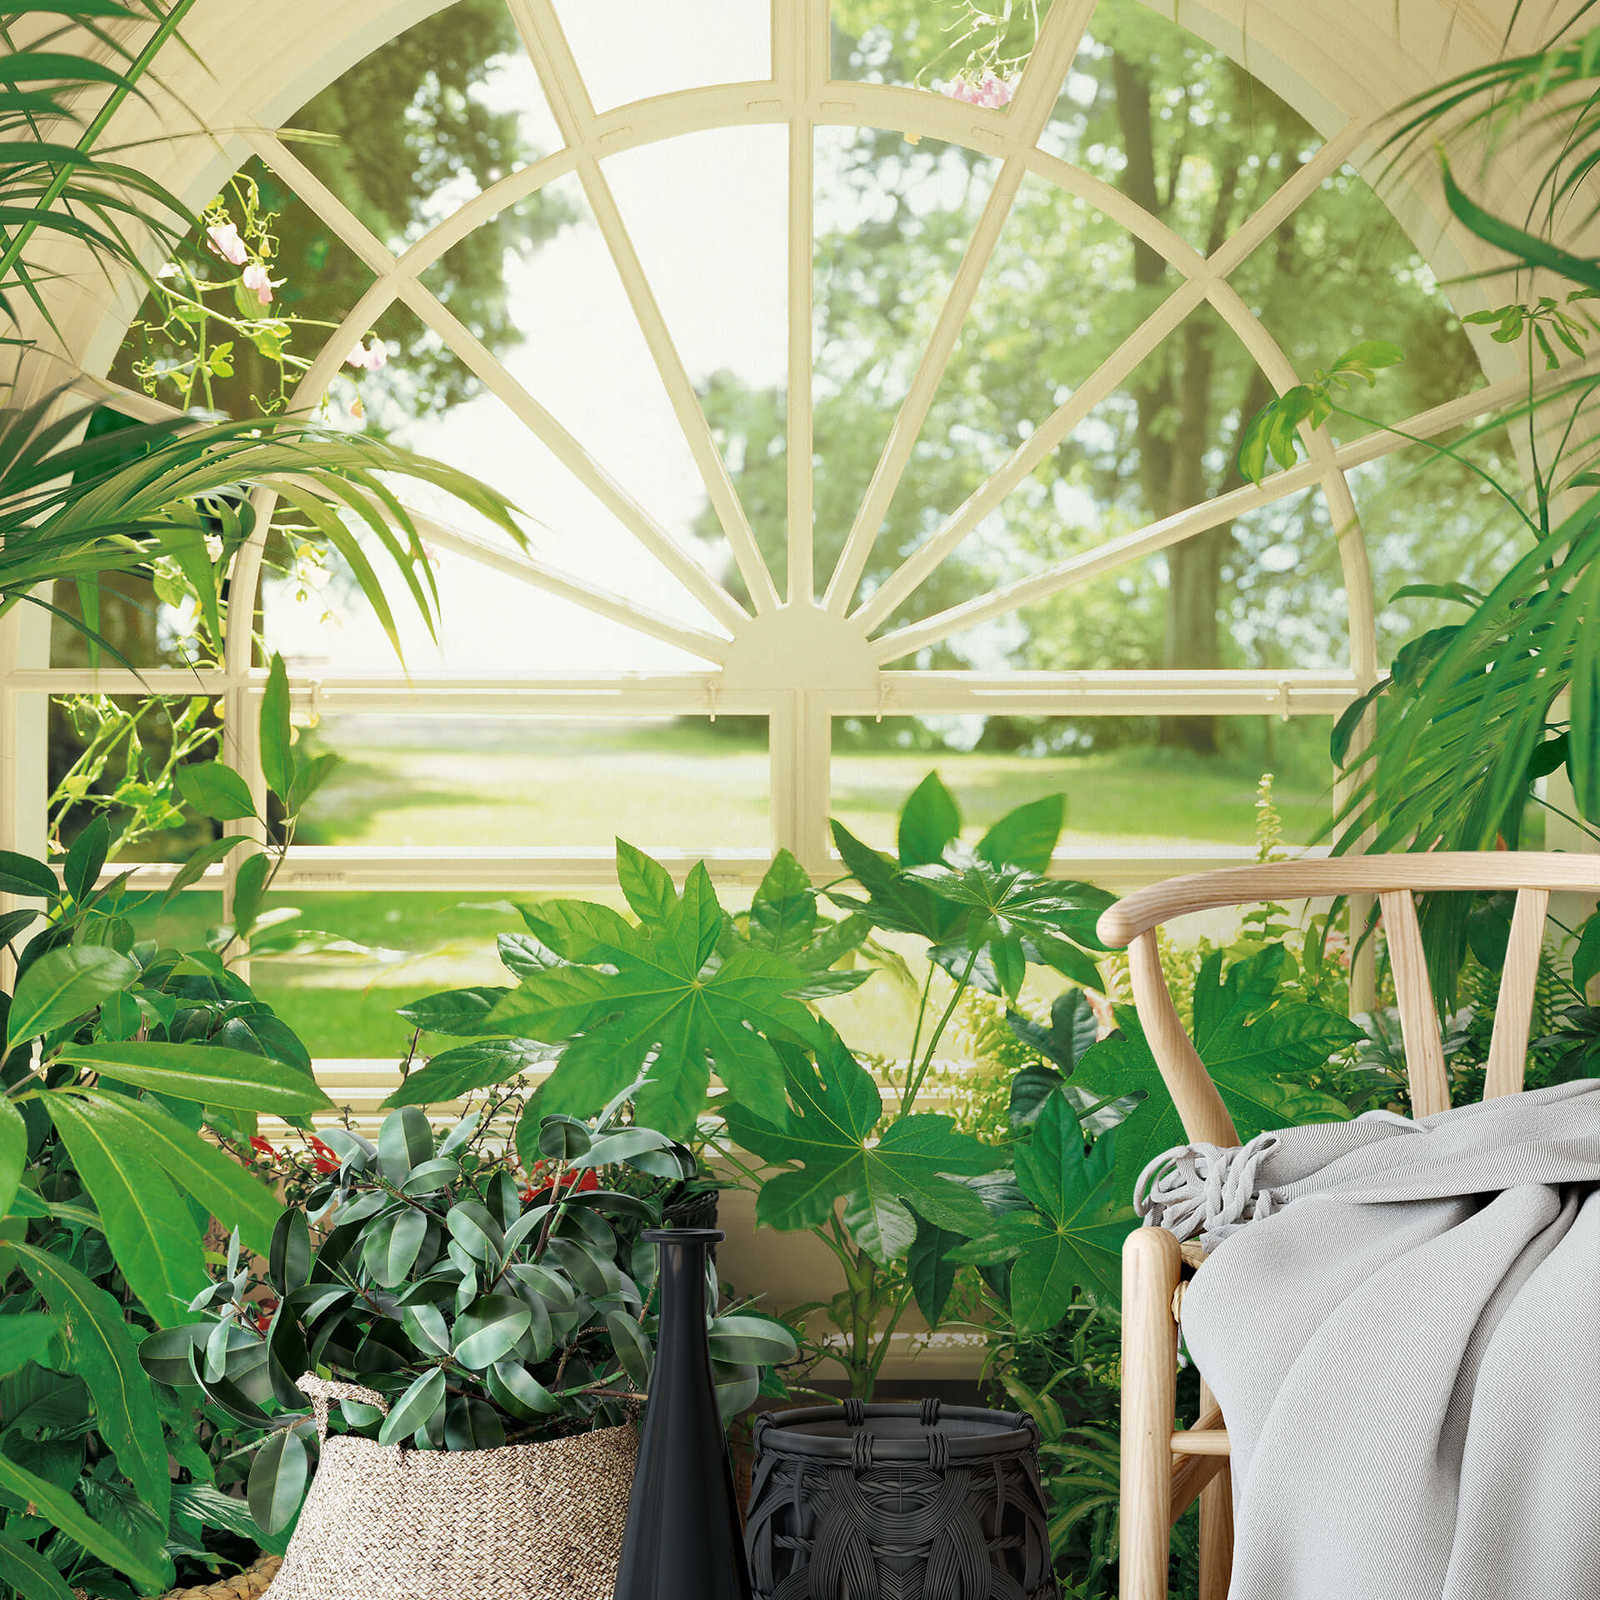             Fotomurali giardino d'inverno piante tropicali, formato verticale
        